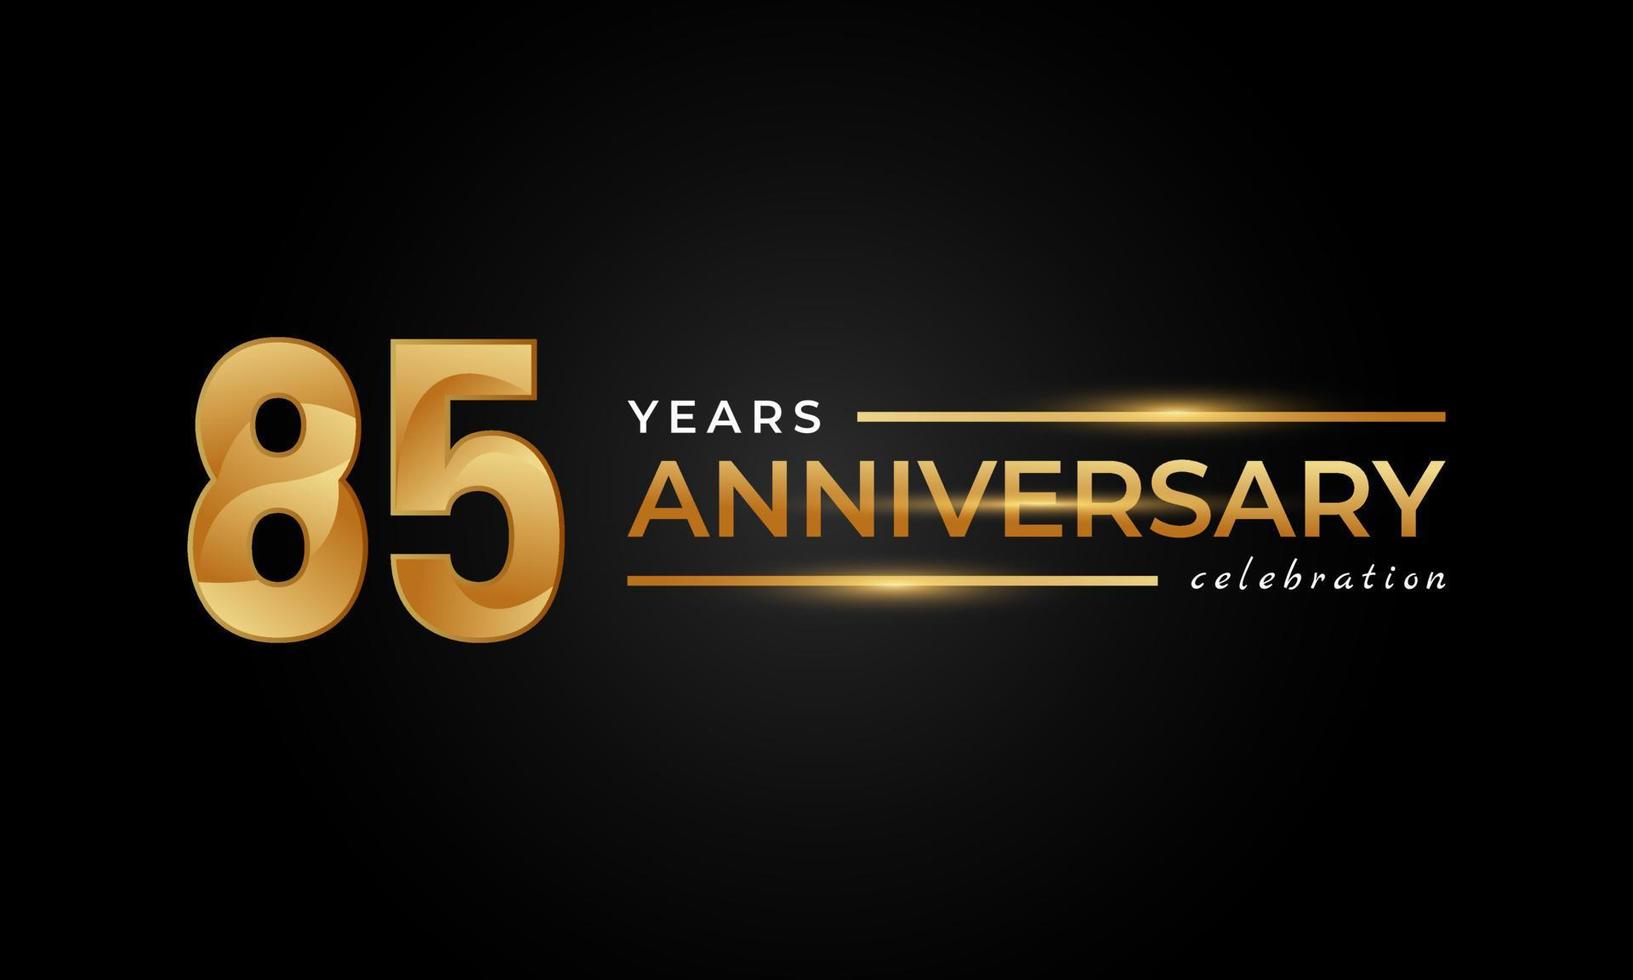 85-jähriges Jubiläum mit glänzender goldener und silberner Farbe für Feierlichkeiten, Hochzeiten, Grußkarten und Einladungen einzeln auf schwarzem Hintergrund vektor